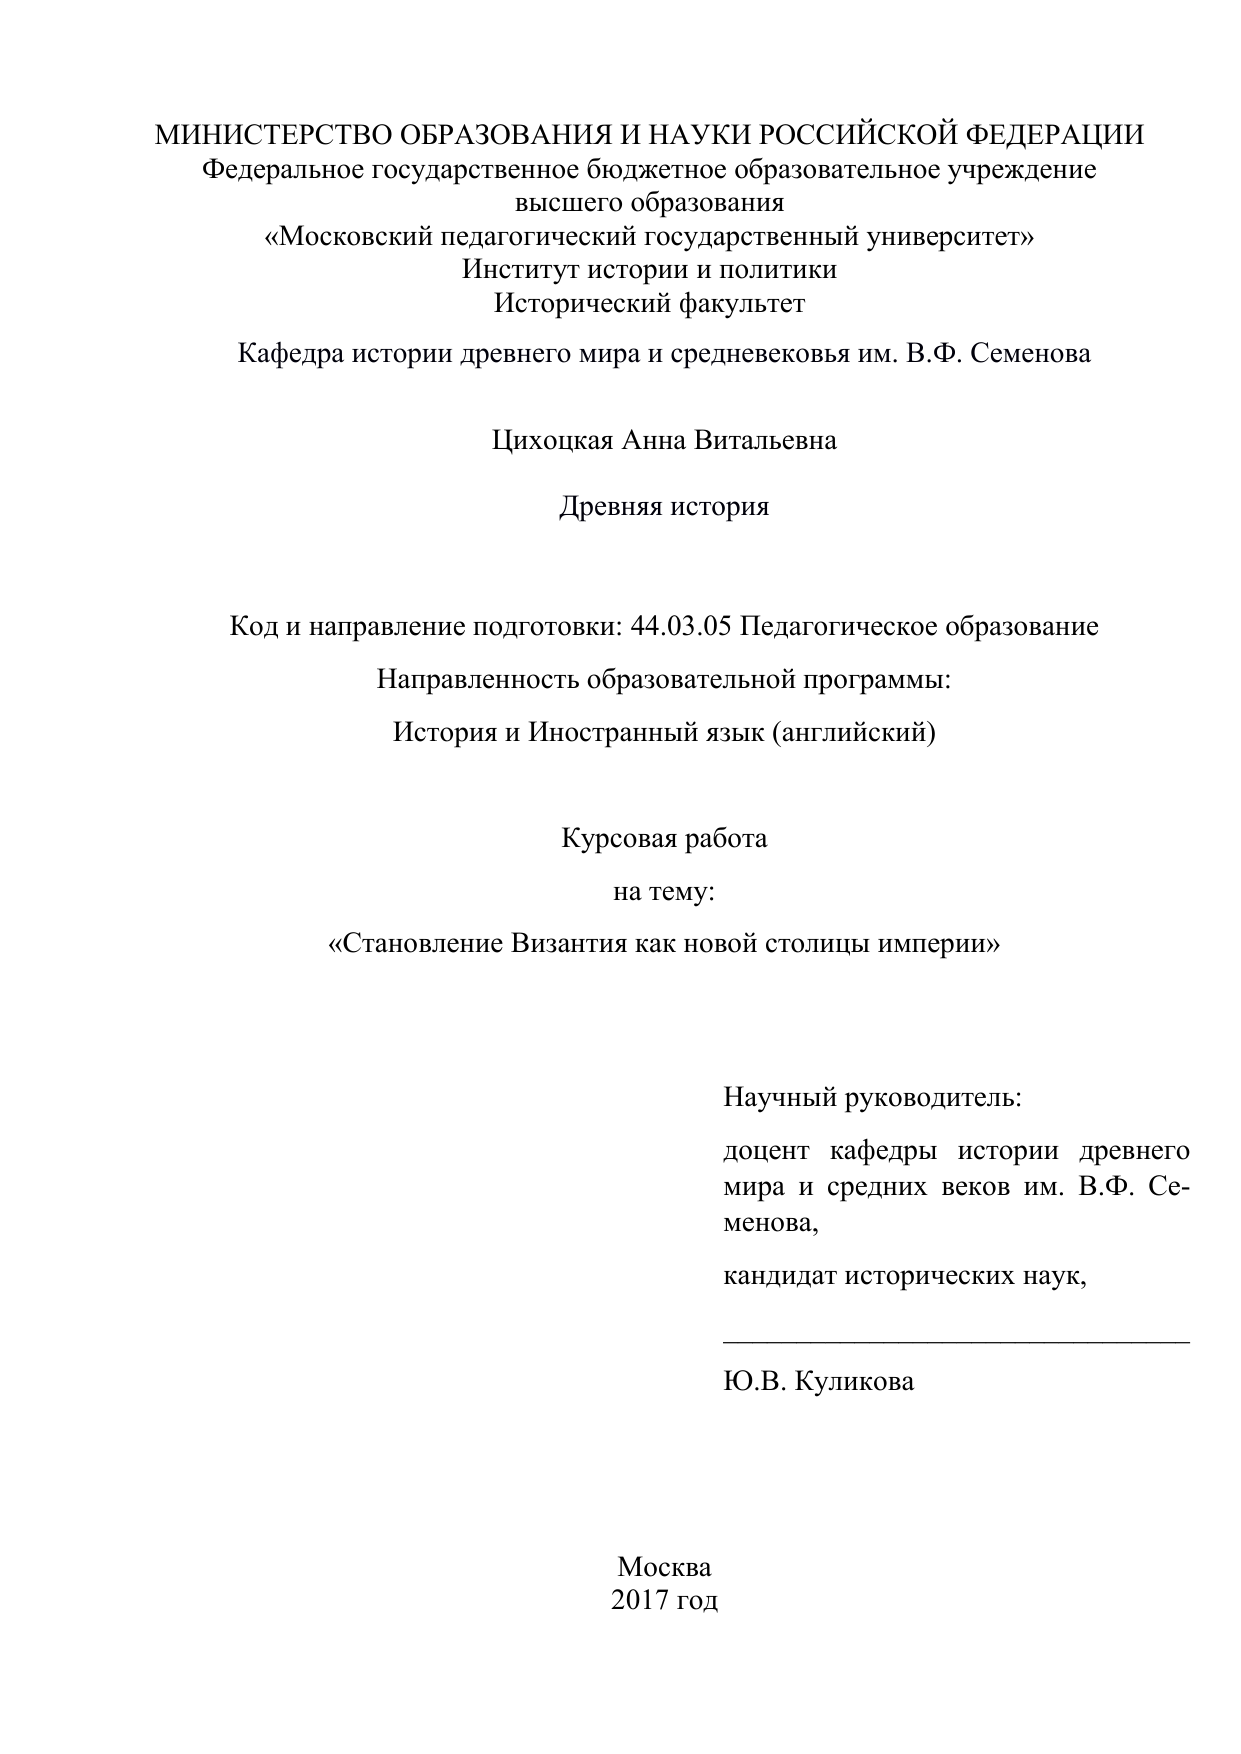 Дипломная работа по теме Синтез конфессиональных культур в Восточной Армении в IV-V вв.